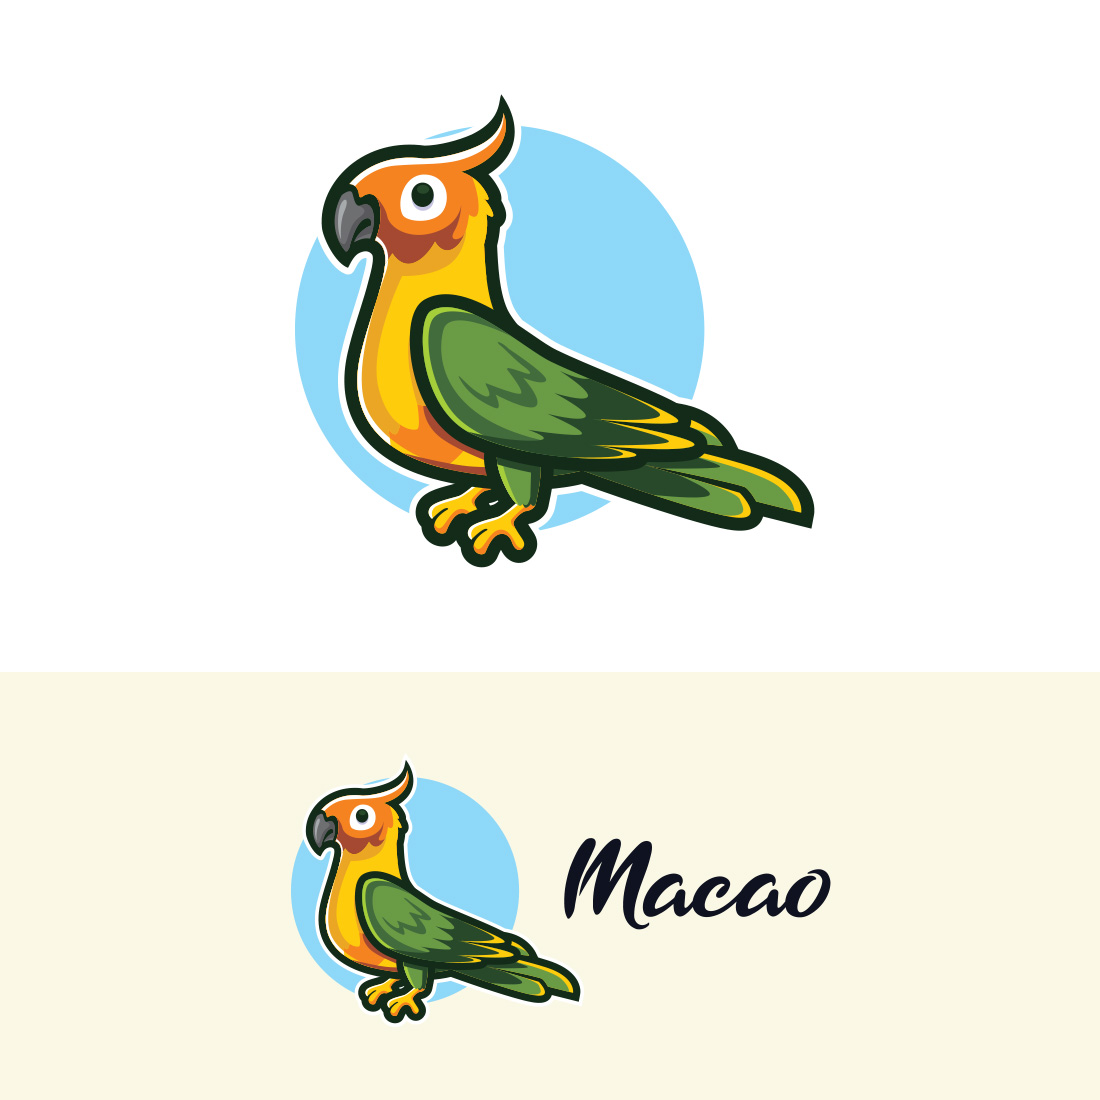 Macau Bird Logo Design cover image.